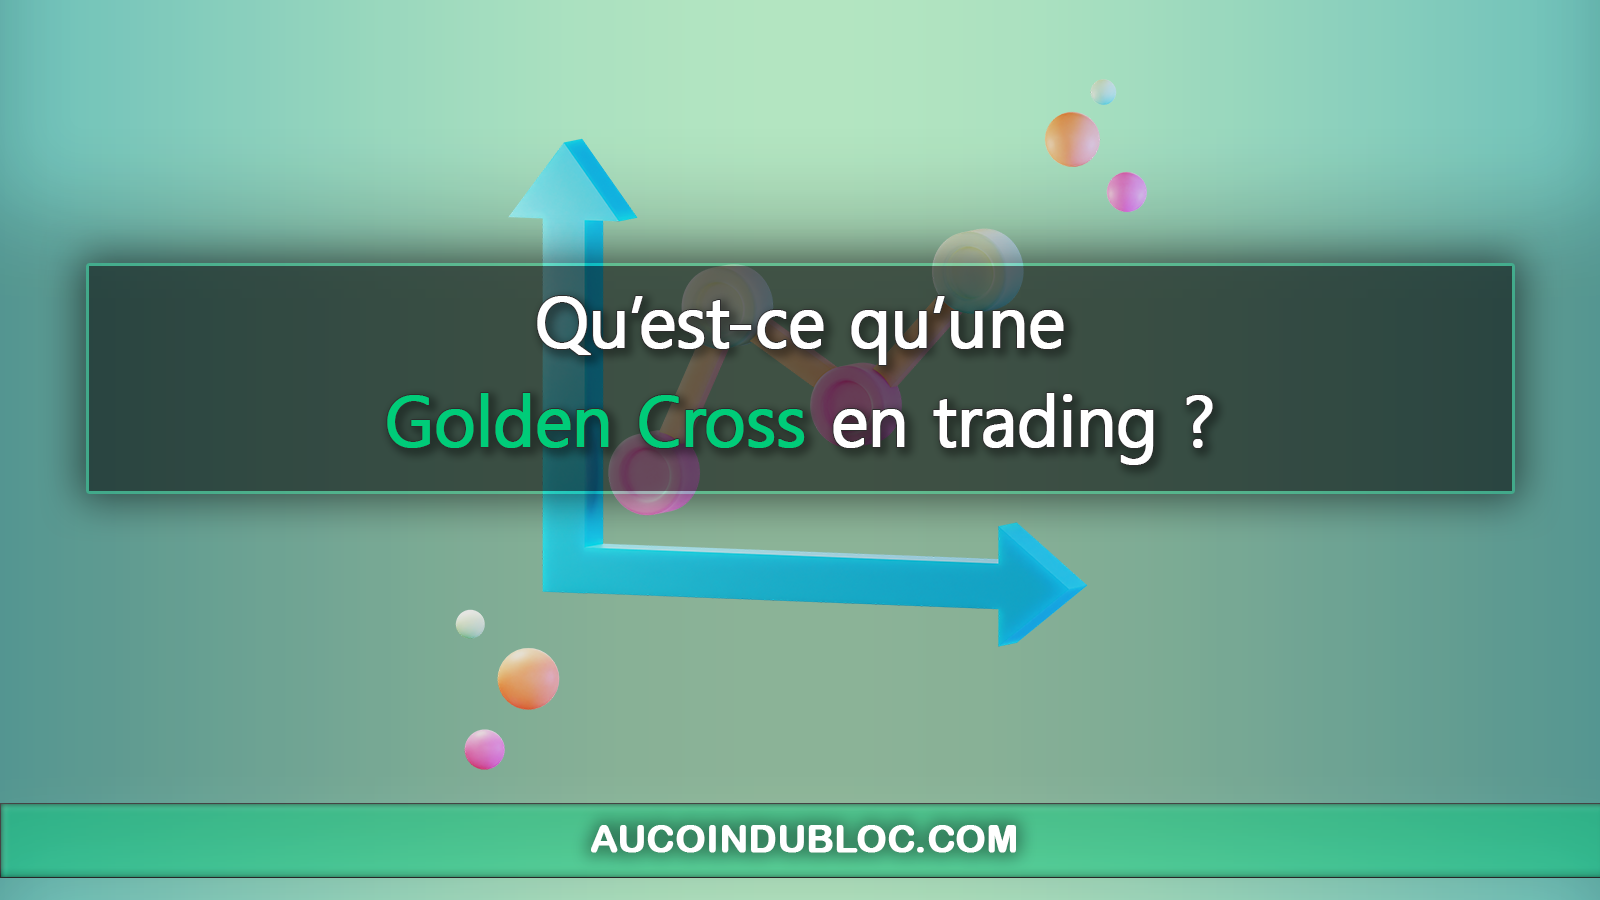 Golden Cross trading